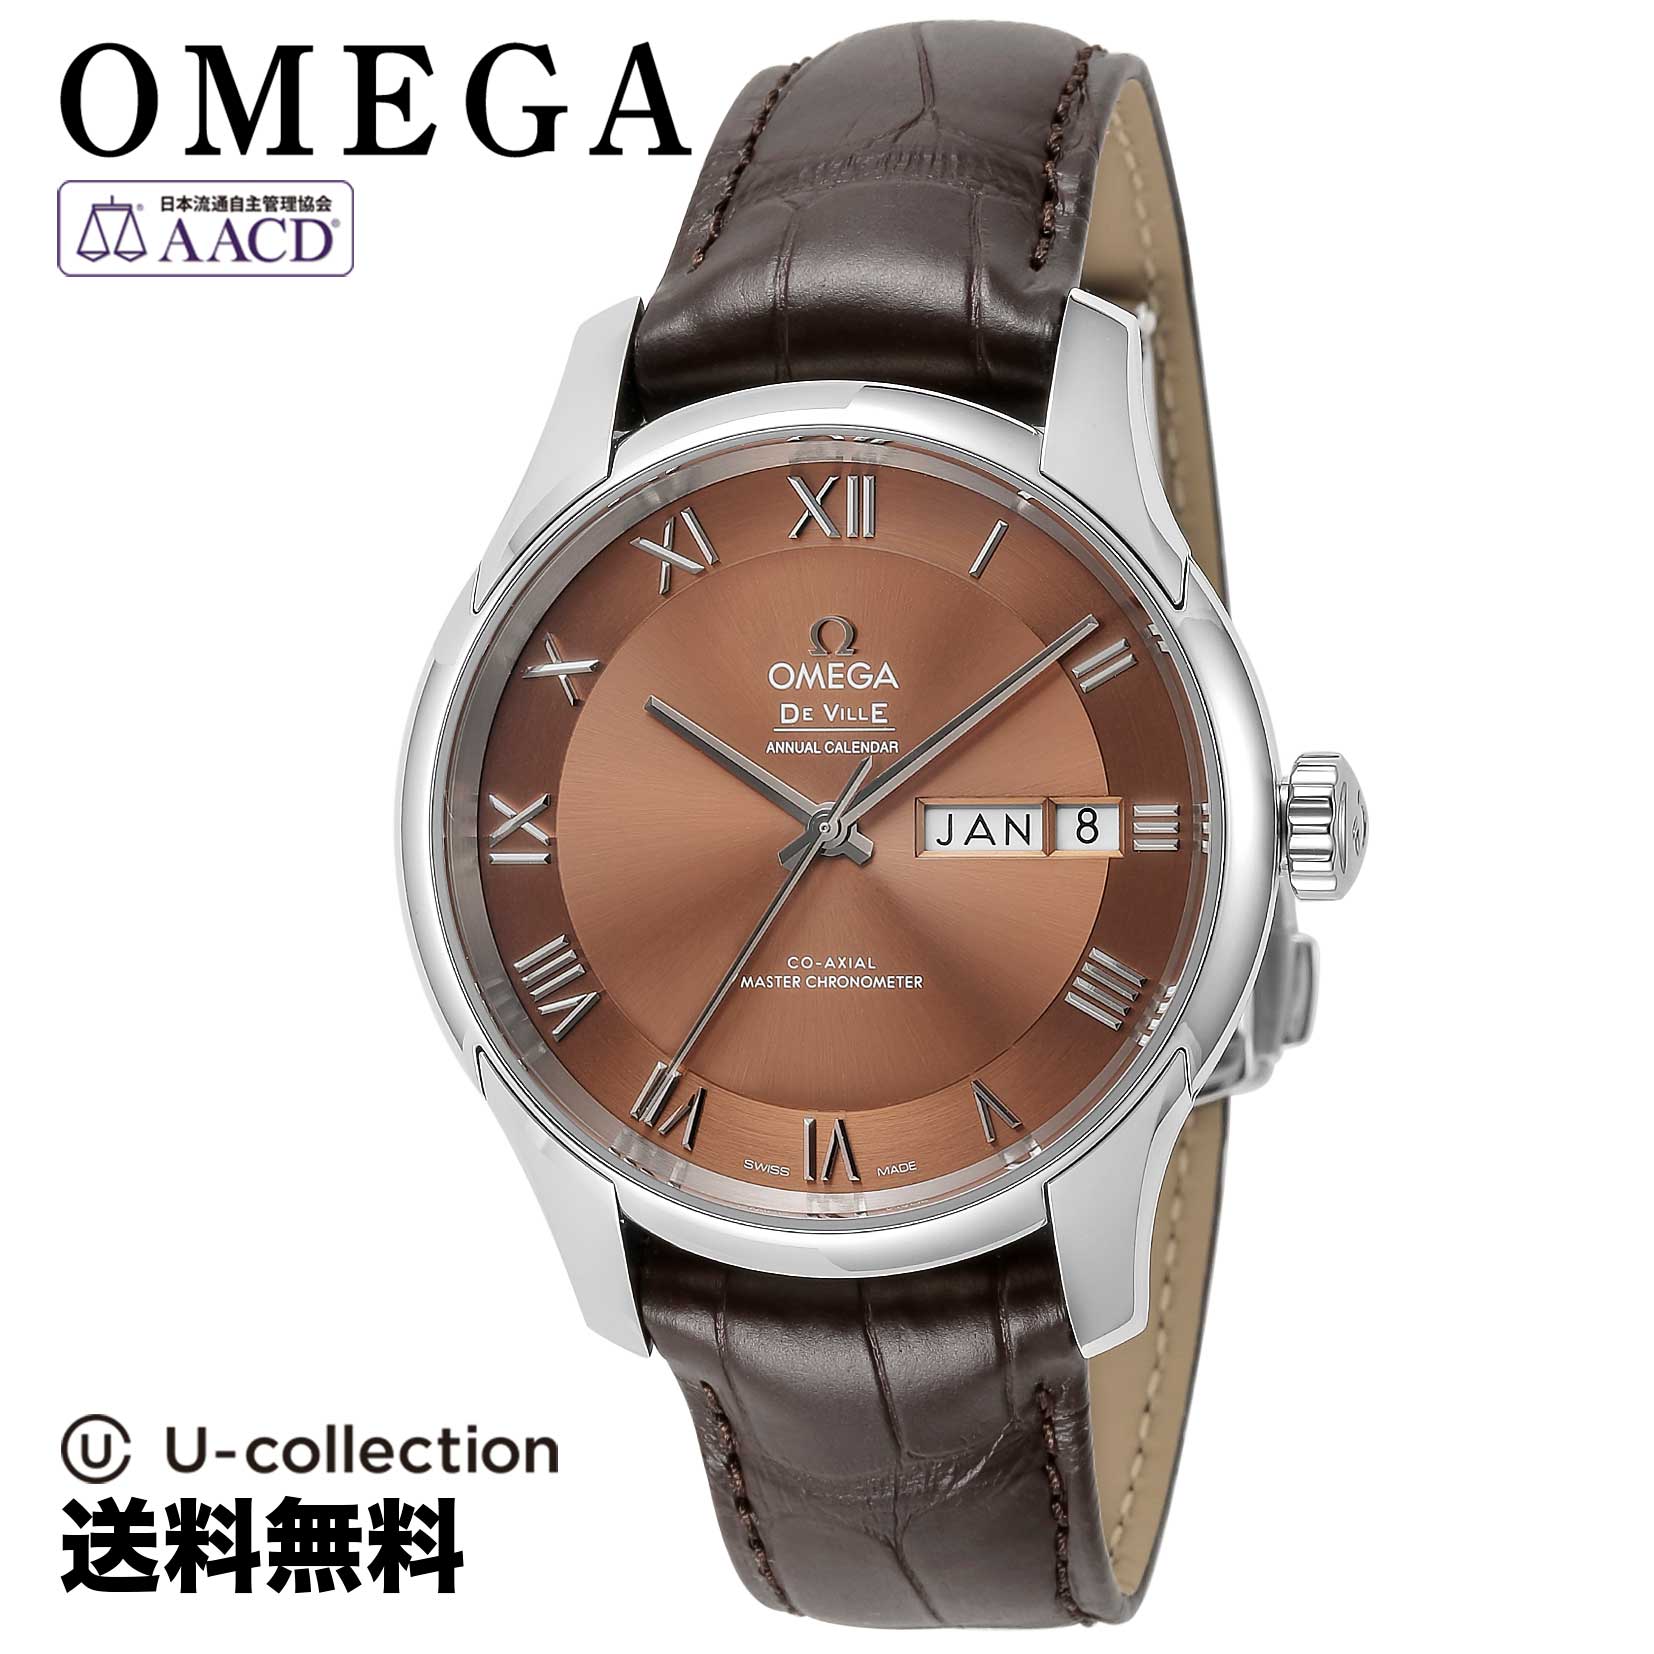 オメガ【腕時計】 OMEGA(オメガ) De Ville / デヴィル メンズ ブラウン コーアクシャル自動巻 433.13.41.22.10.001 時計 ブランド